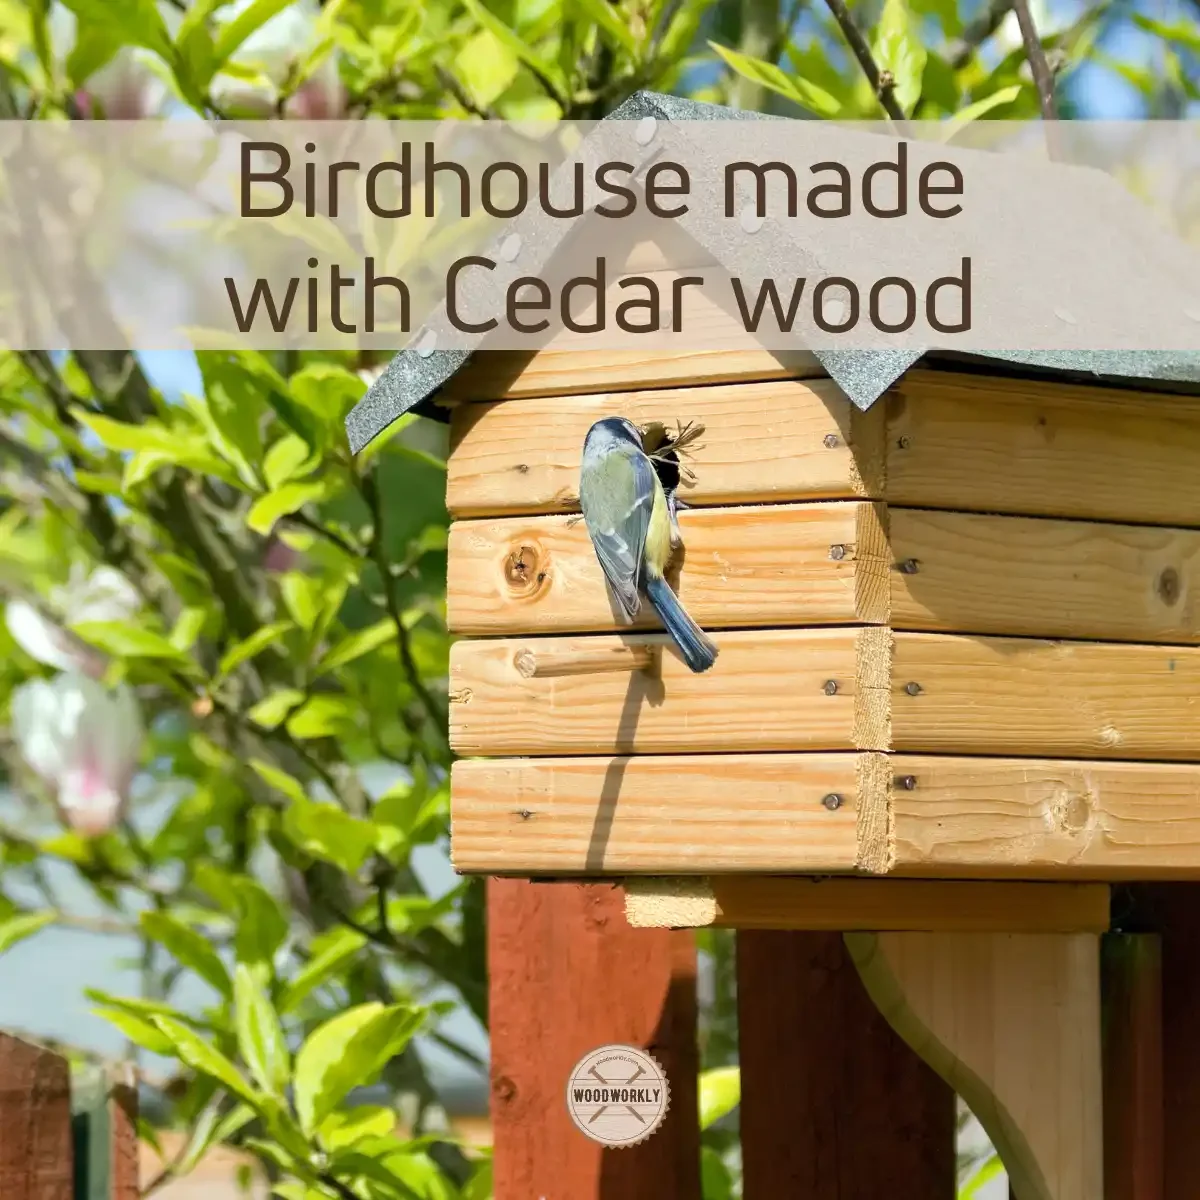 Birdhouse made with Cedar wood